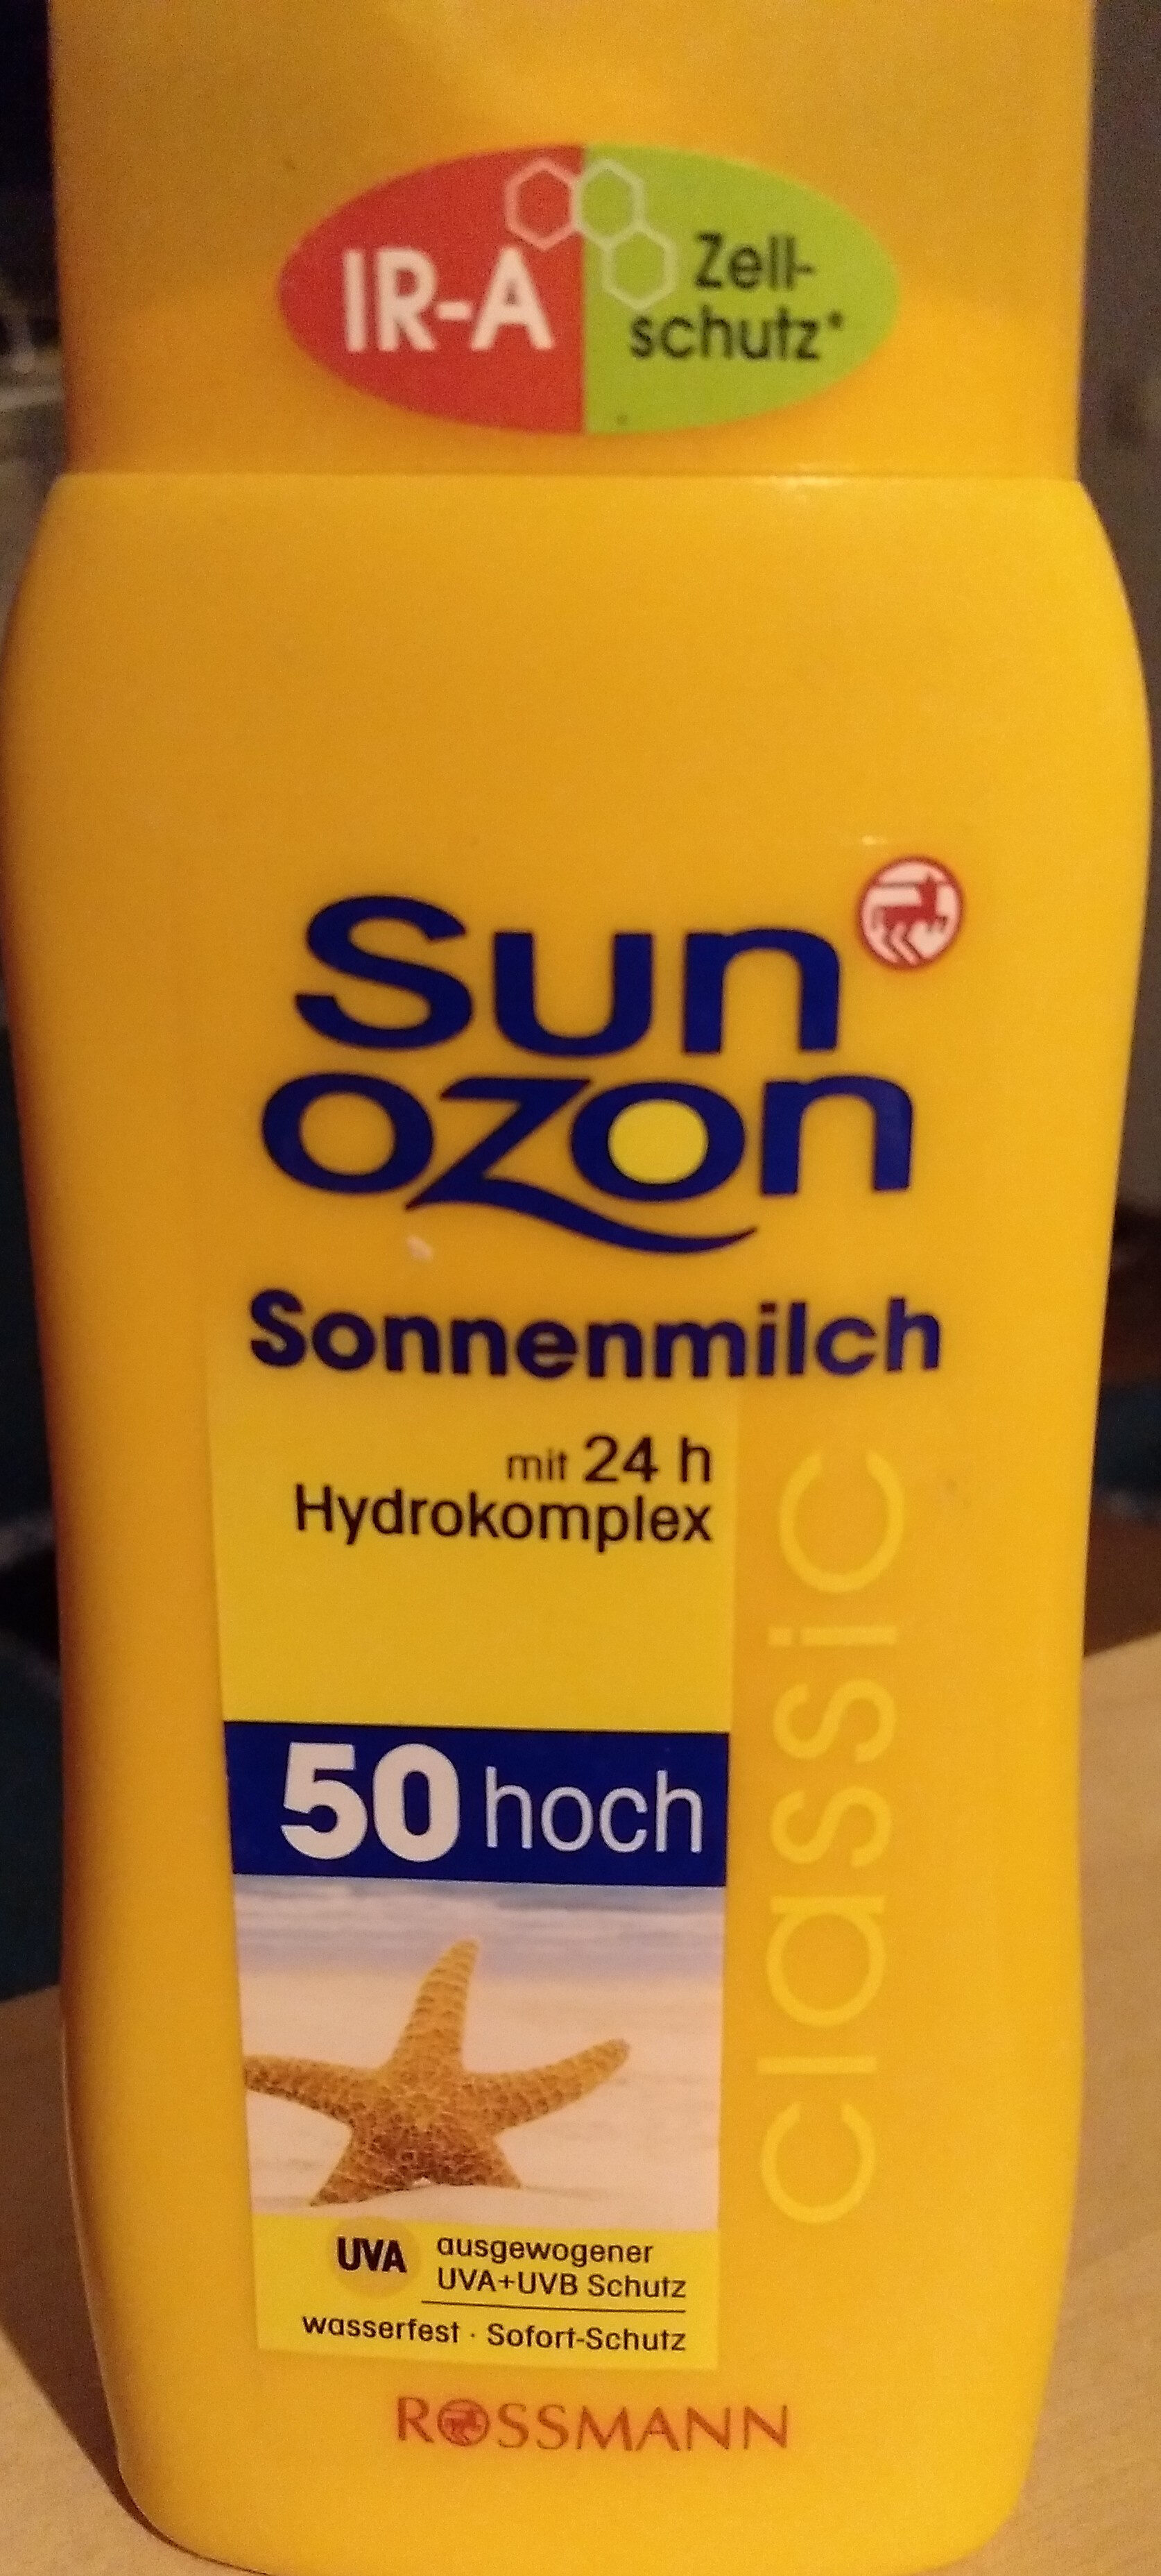 sun Ozon - Product - de